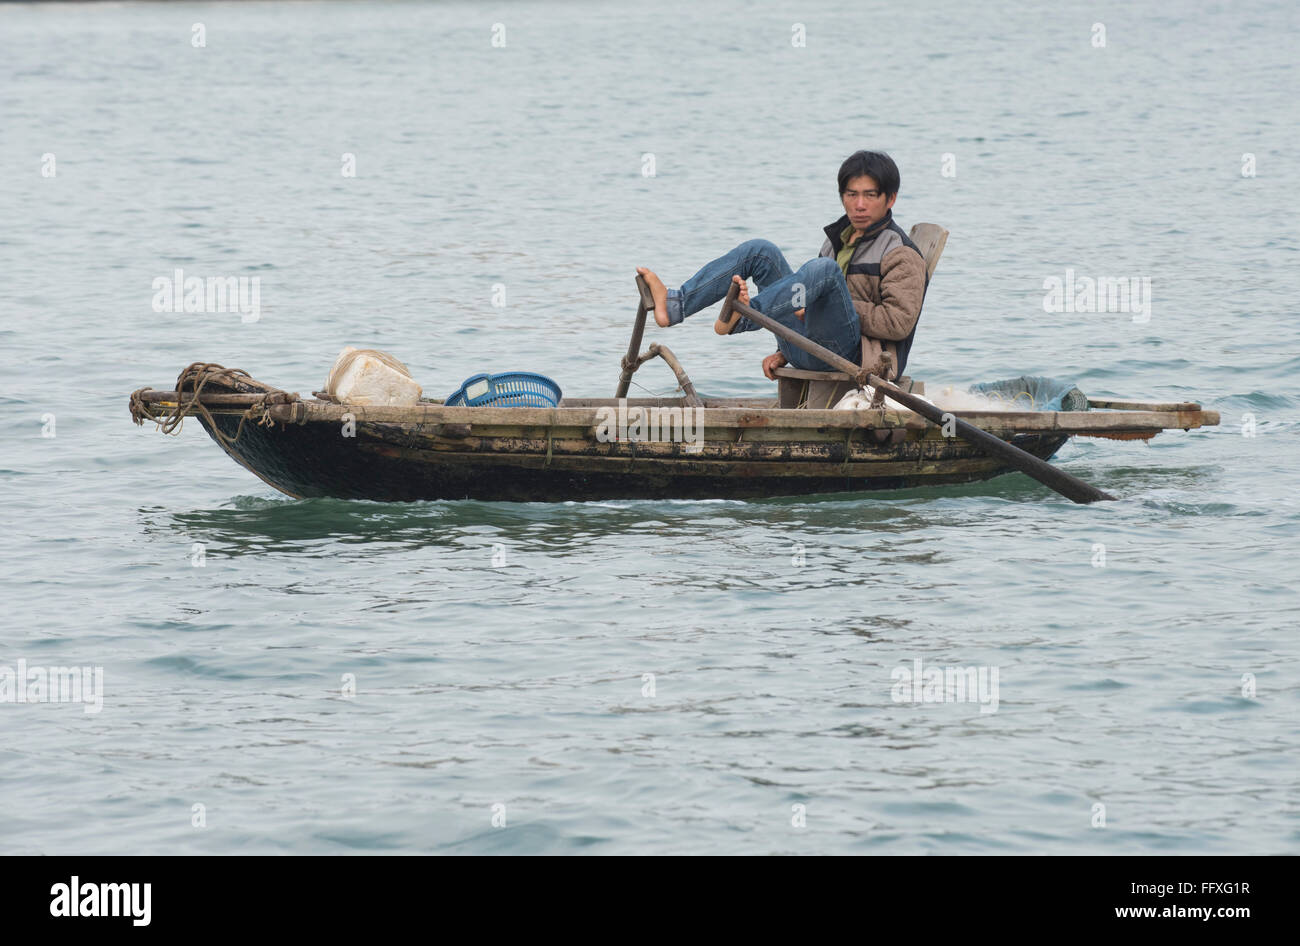 Un petit bateau à rames pour la pêche et le transport, l'homme en utilisant traditionnellement ses pieds pour rangée, Halong Bay, Vietnam Banque D'Images